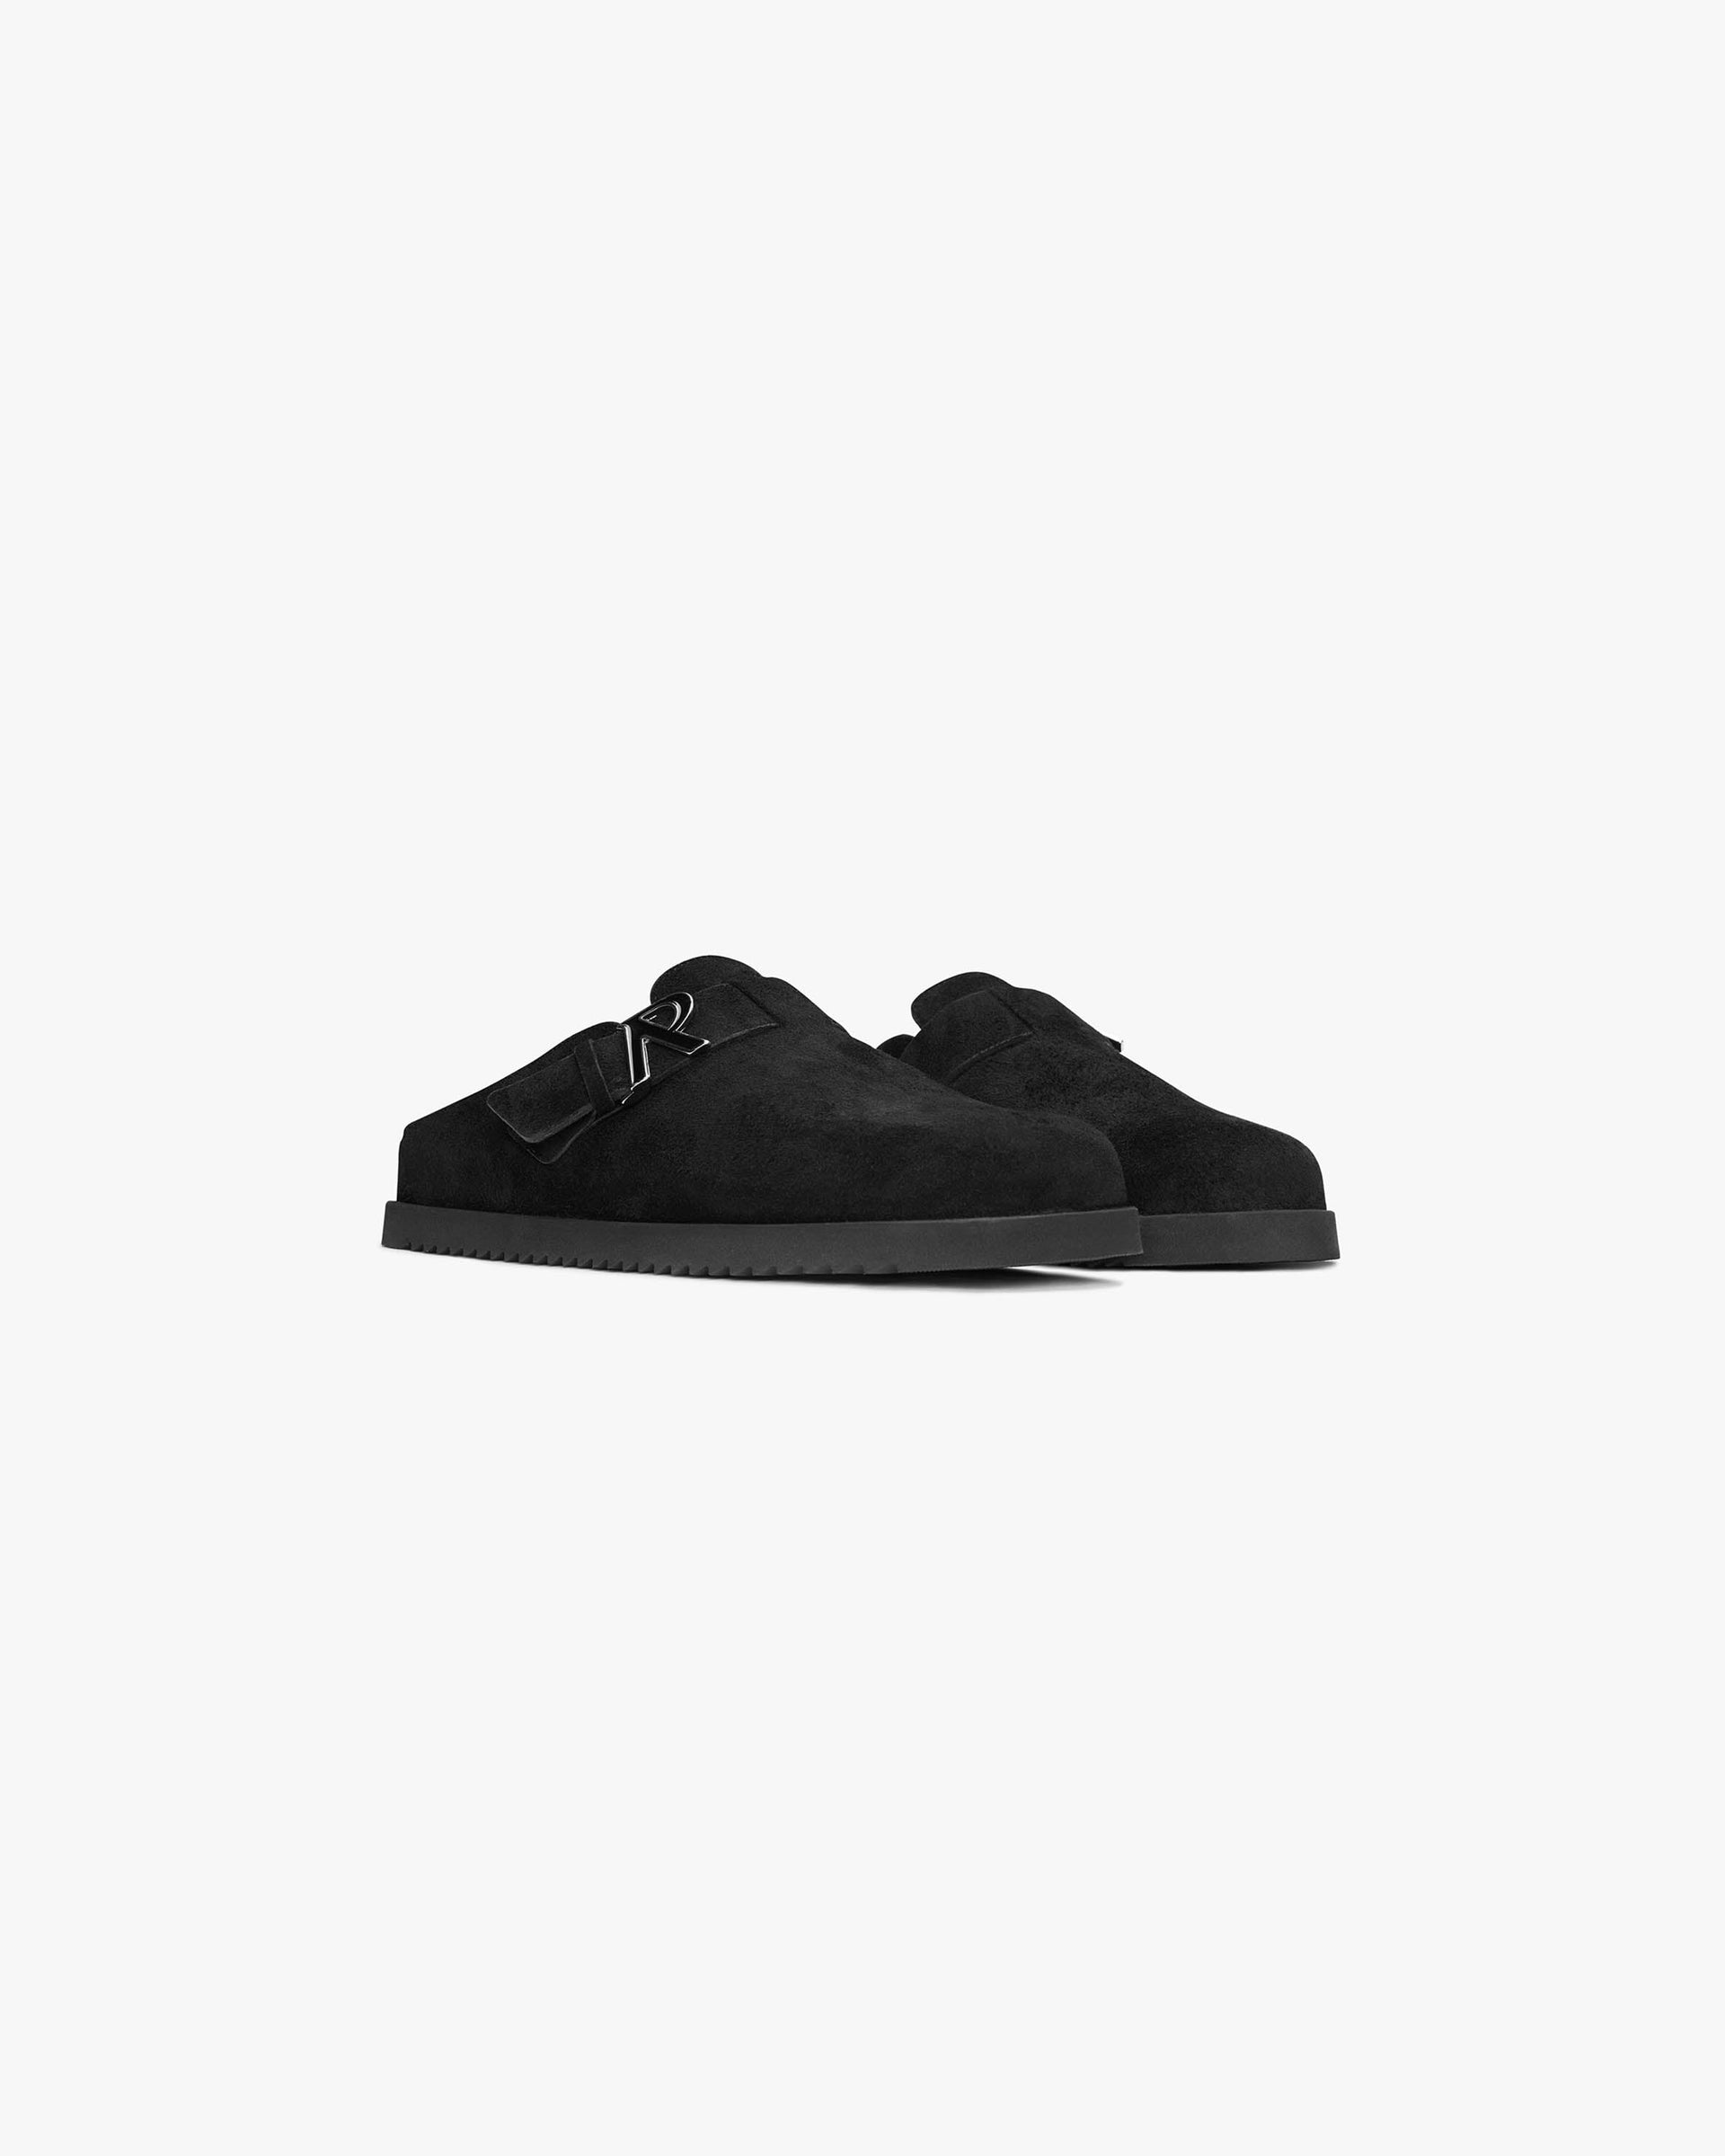 Initial Mule | Black Footwear SC23 | Represent Clo